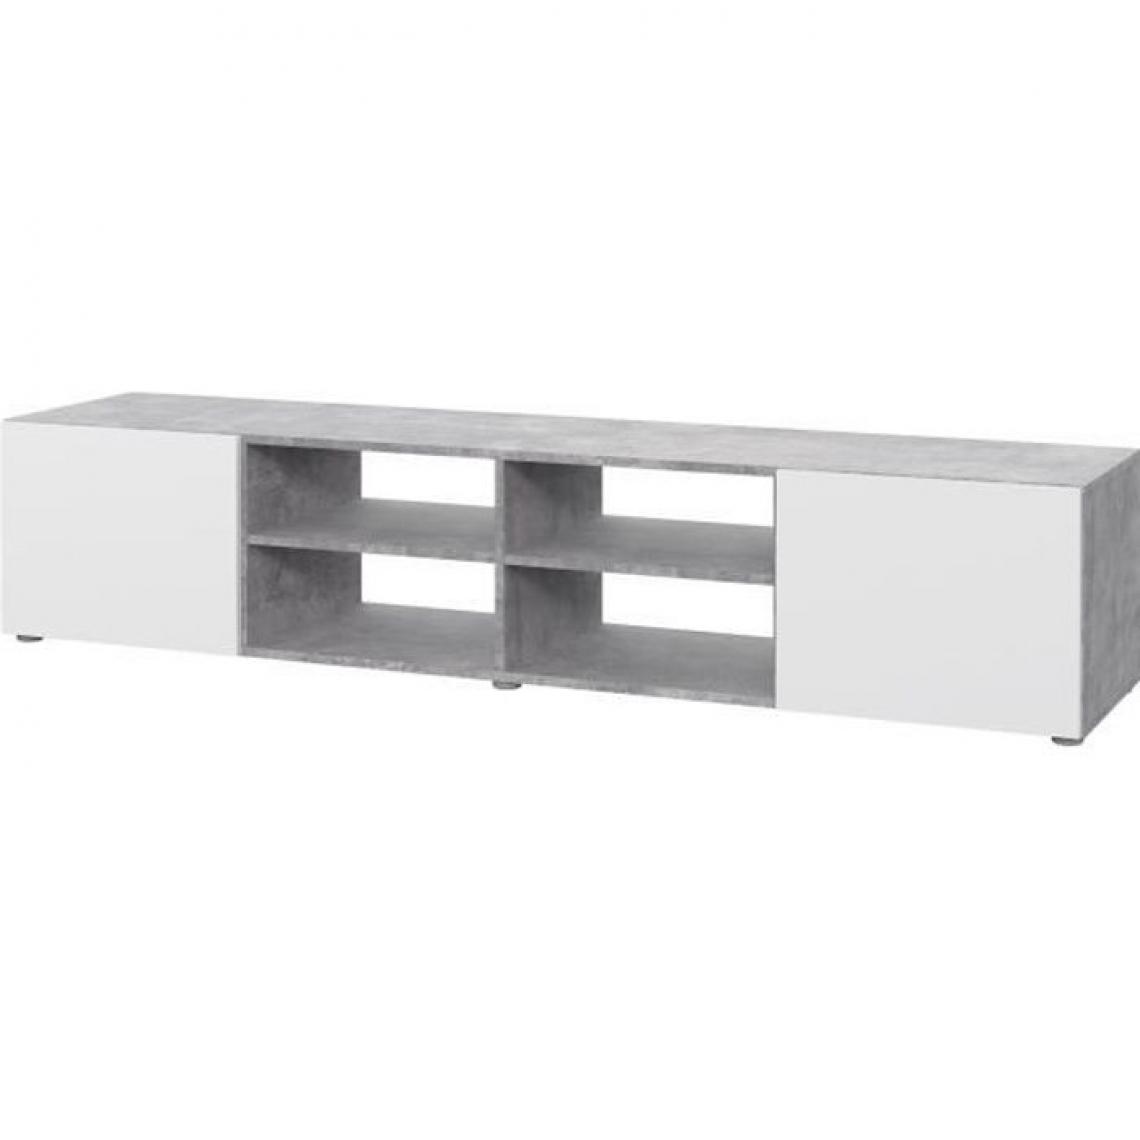 Cstore - CSTORE - pilvi meuble tv - blanc et béton gris clair - l 180xp 42xh 37 cm - Meubles TV, Hi-Fi